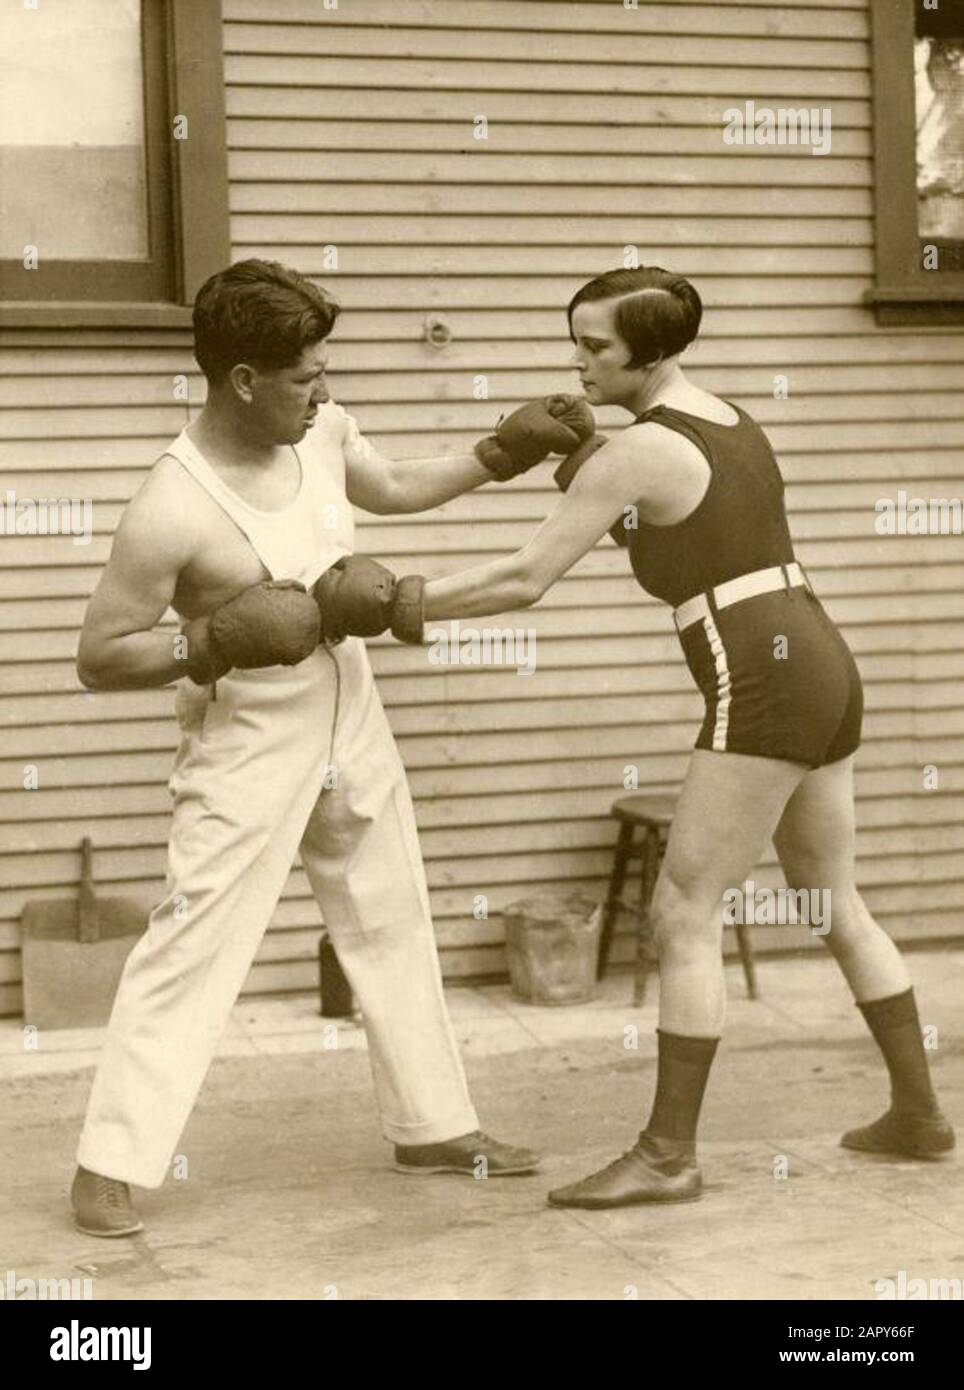 Die Weltmeisterin boxt im Leichtgewicht Louise Adler trainiert mit dem Preiskämpfer Joe Rivers für das Spiel, in dem sie ihren Titel verteidigen wird, die Vereinigten Staaten 1926. Stockfoto